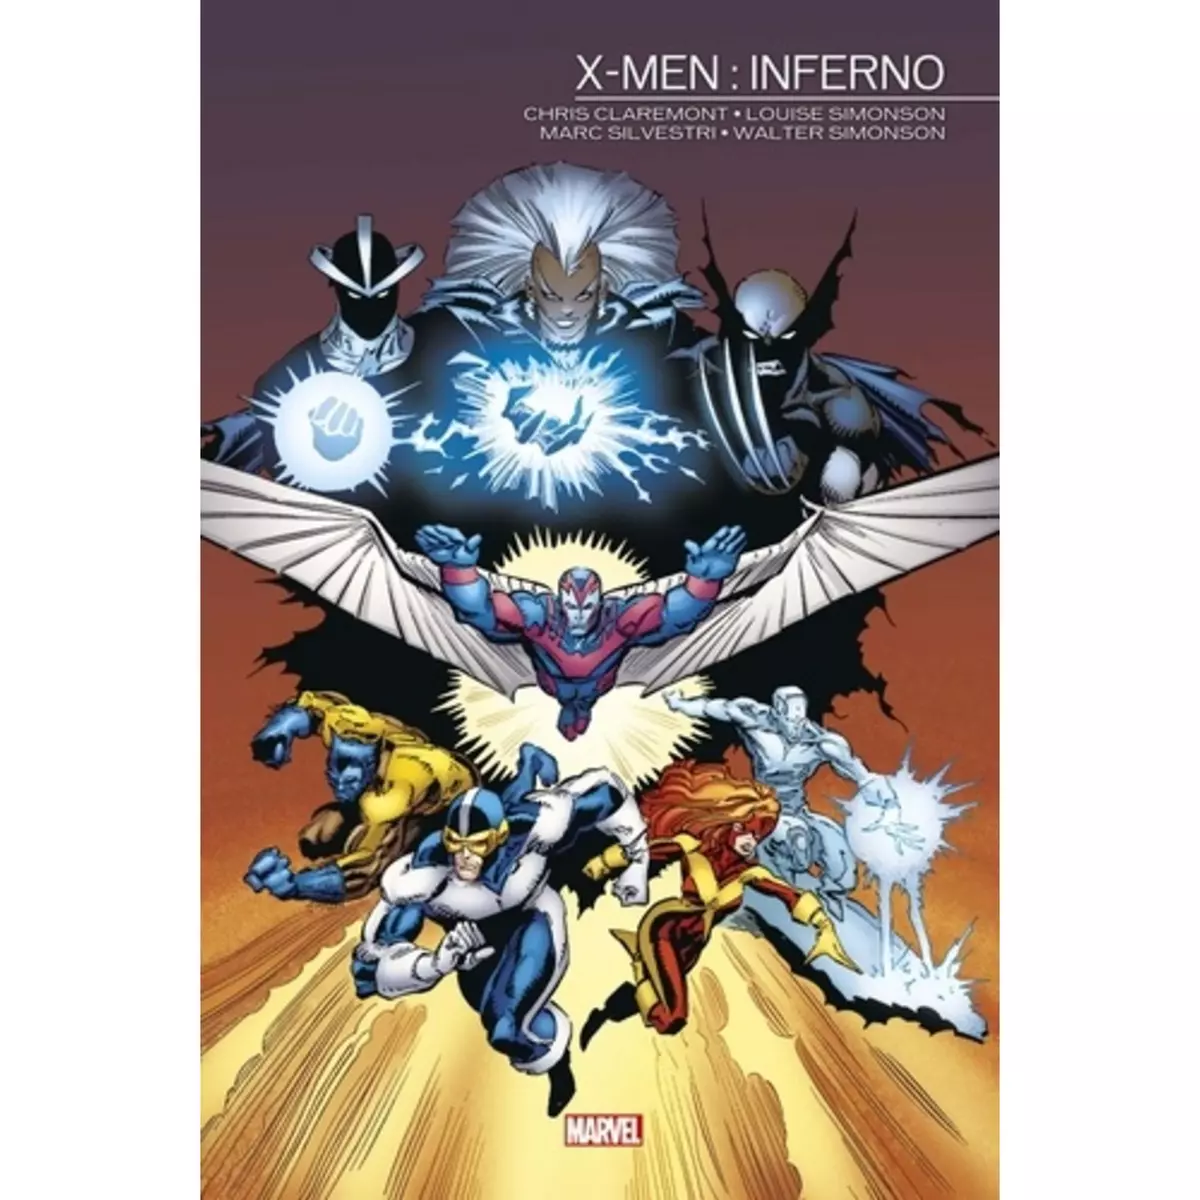  X-MEN : INFERNO. 1988, Claremont Chris